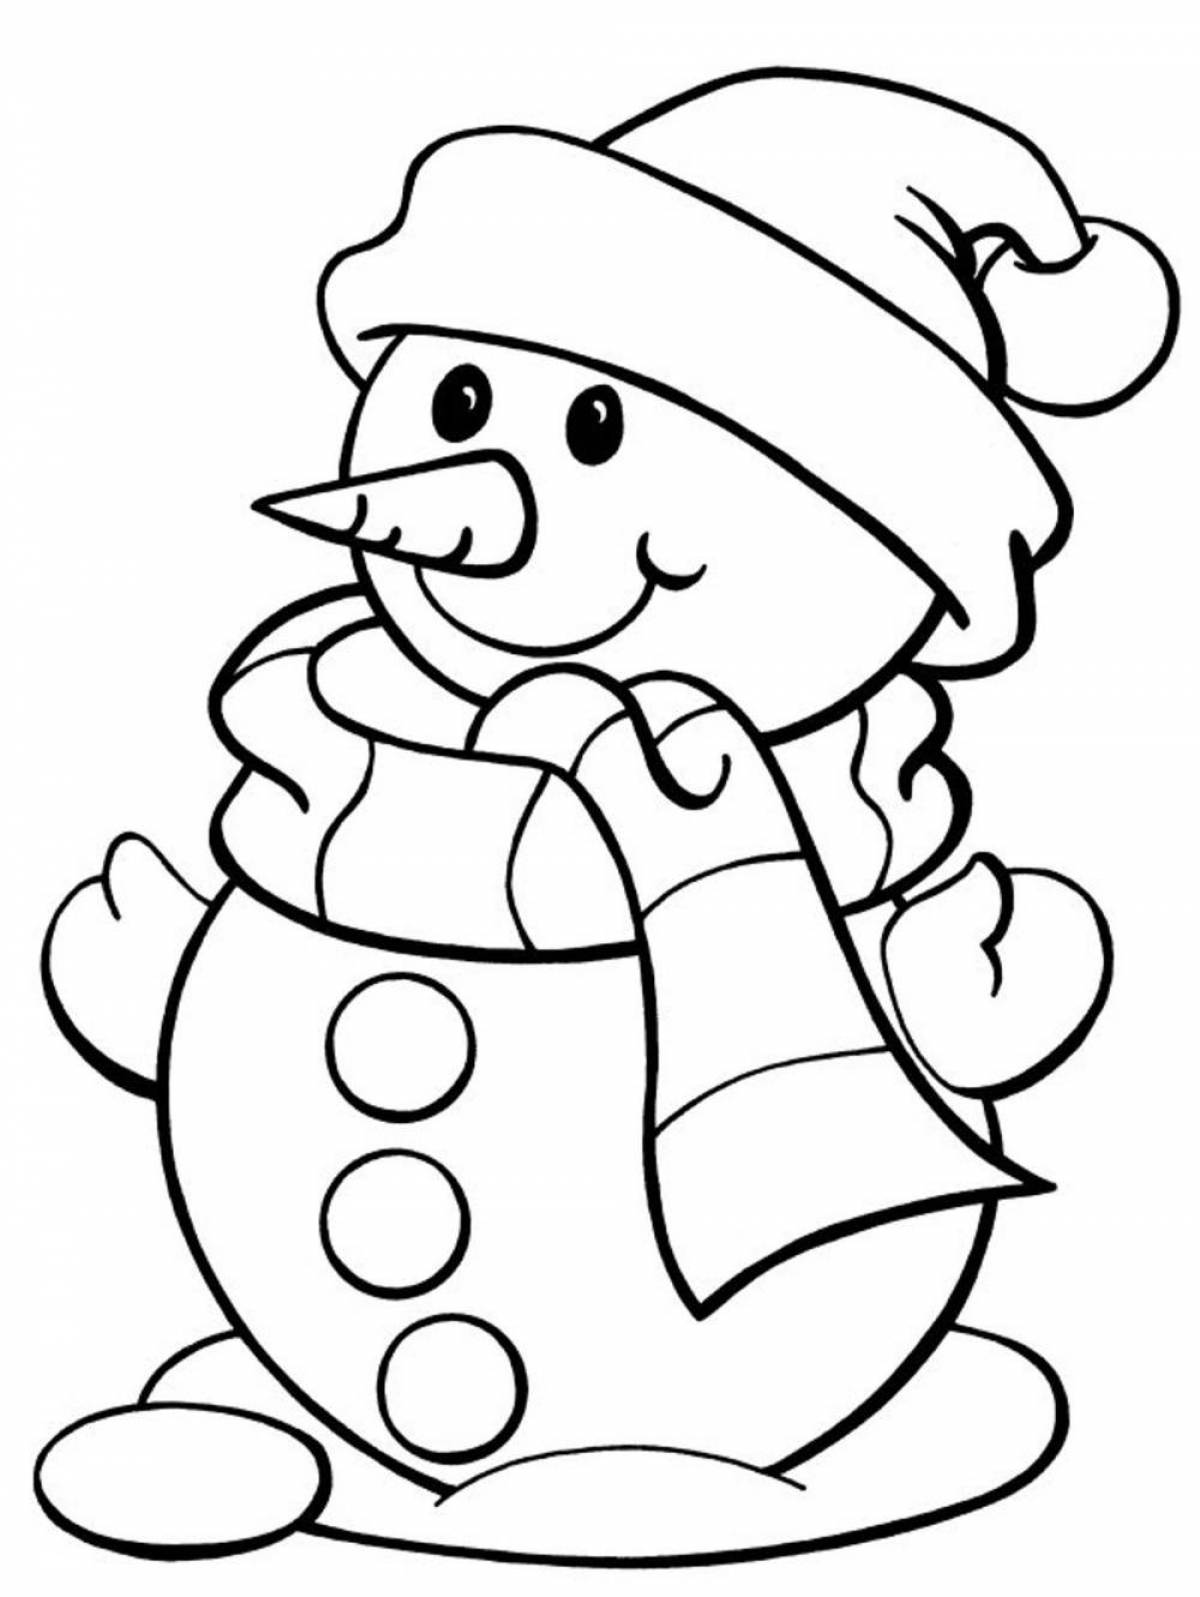 Яркая раскраска снеговика для детей